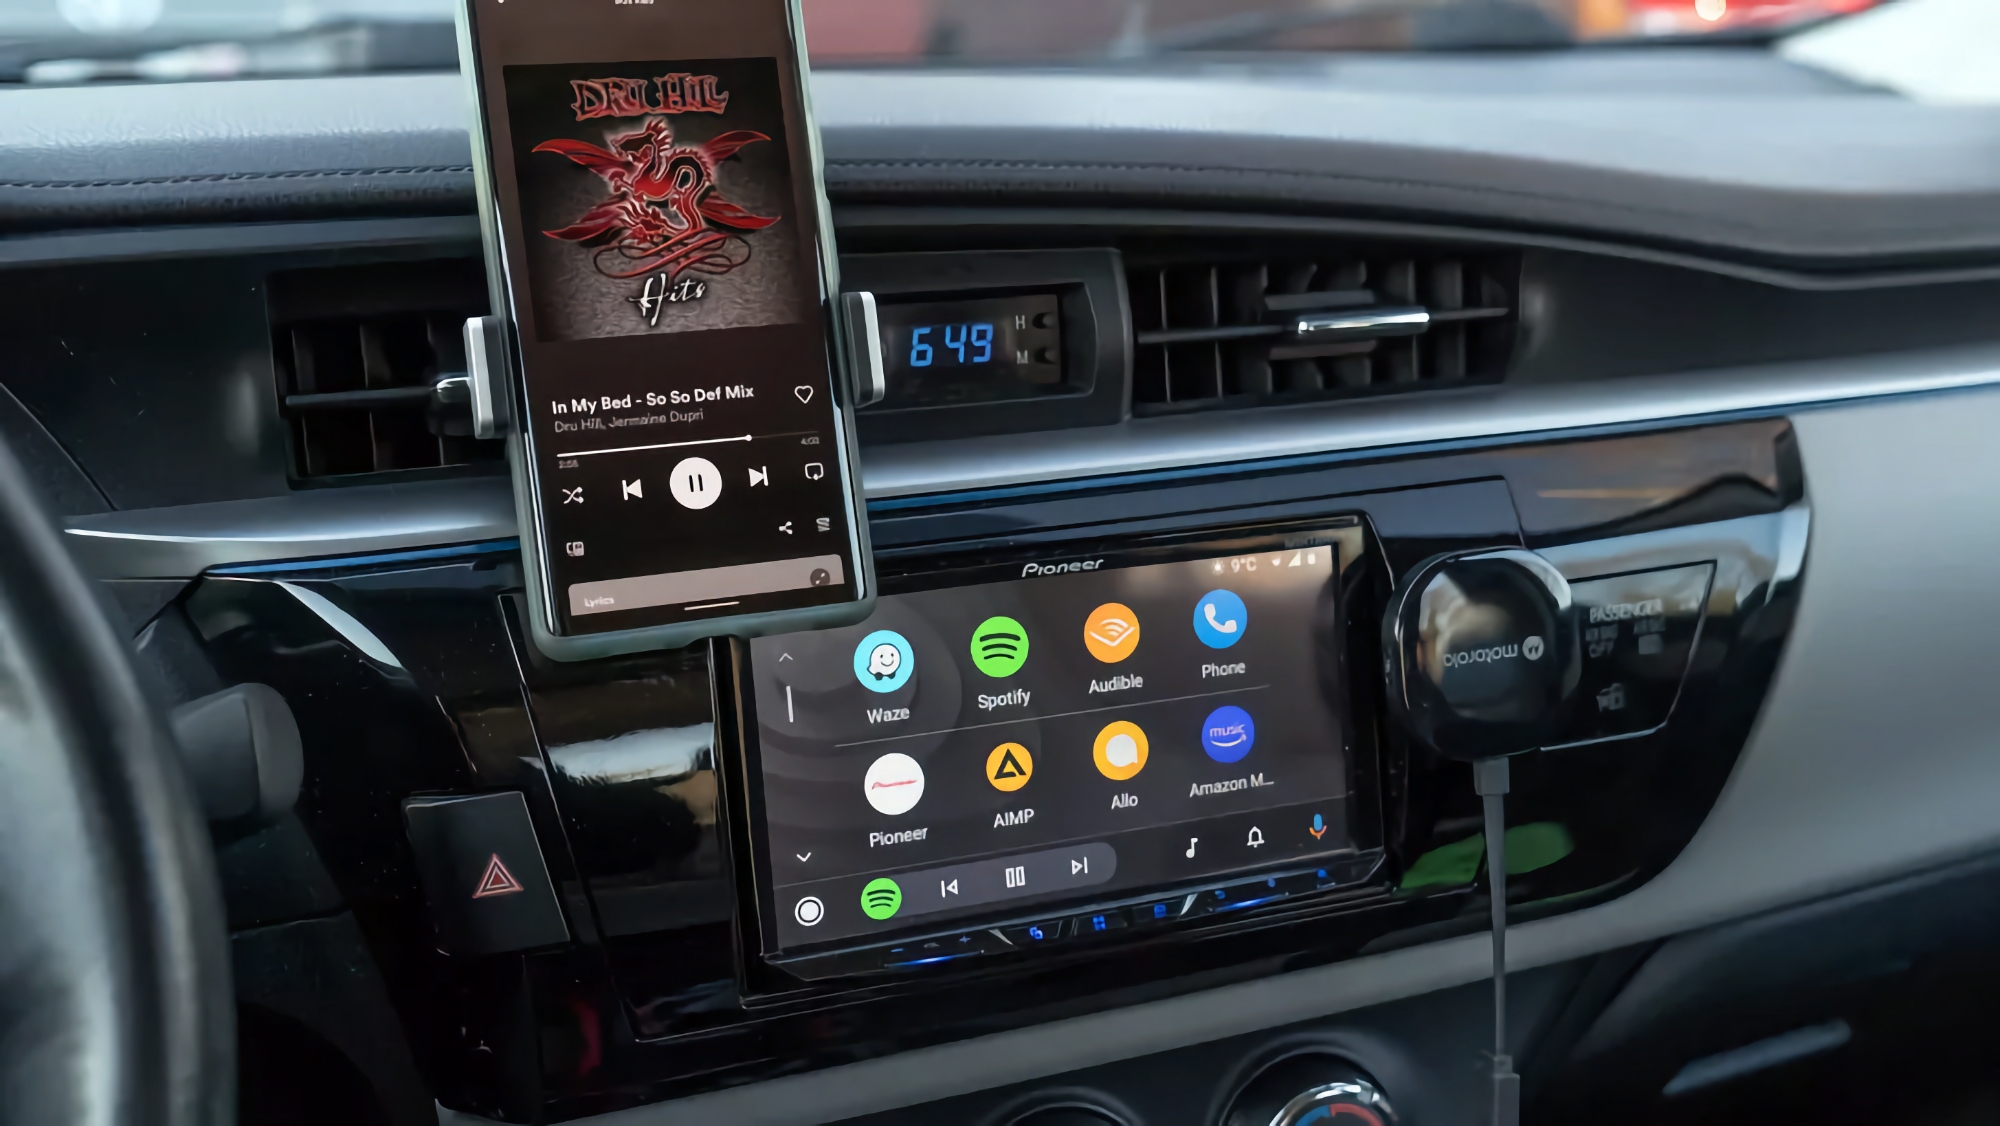 Motorola MA1 a la venta en Amazon por 69 €: un dispositivo que permite usar Android Auto de forma inalámbrica en el coche